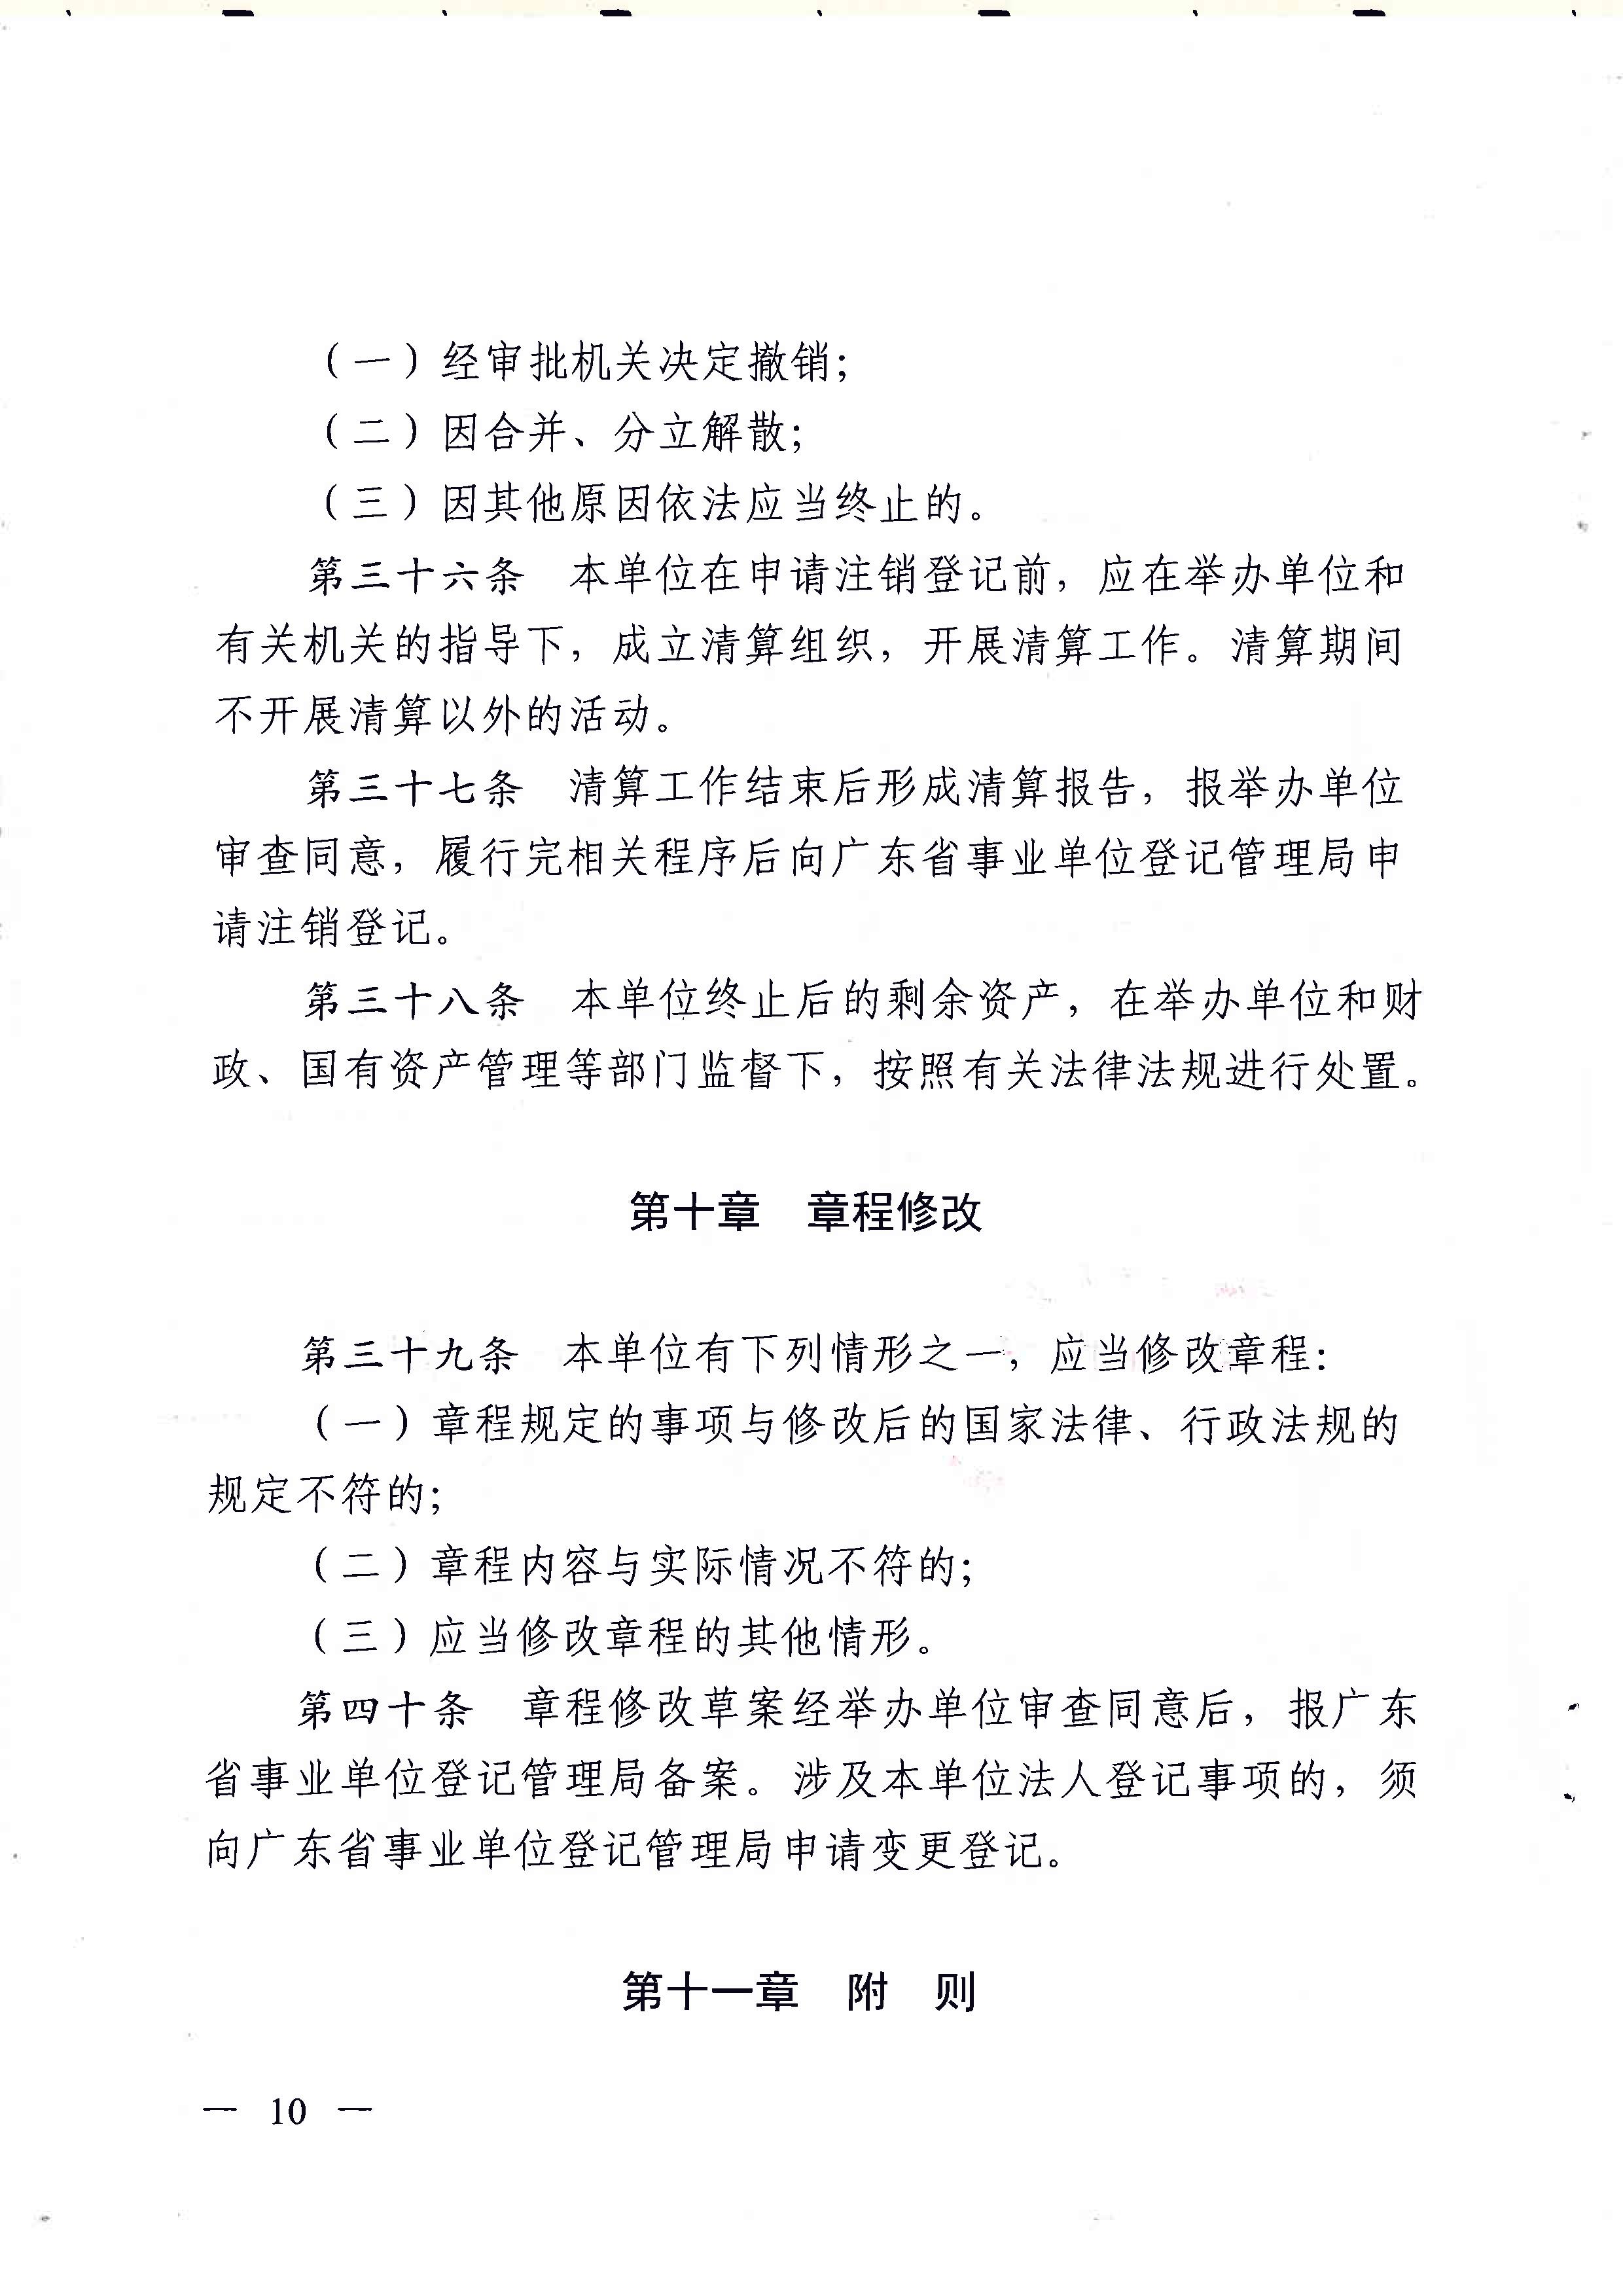 广东省地质实验测试中心事业单位章程 - 0010.jpg